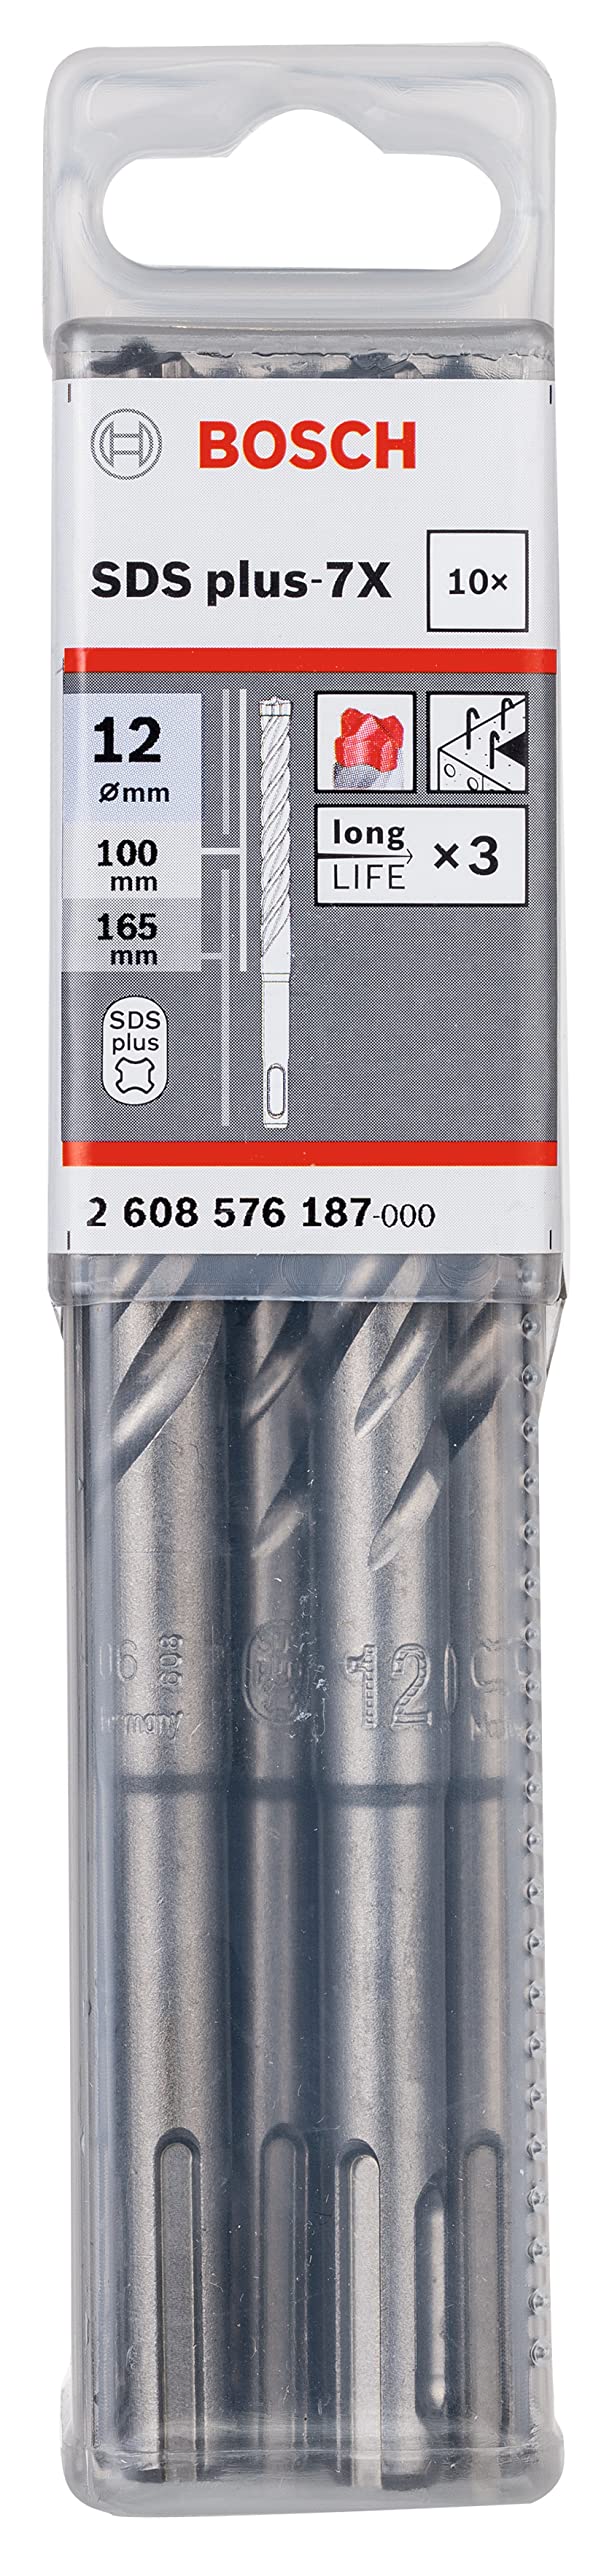 Bosch Professional 10tlg. Hammerbohrer SDS Plus-7X (für Beton und Mauerwerk, 12 x 100 x 165 mm, Zubehör Bohrhammer)